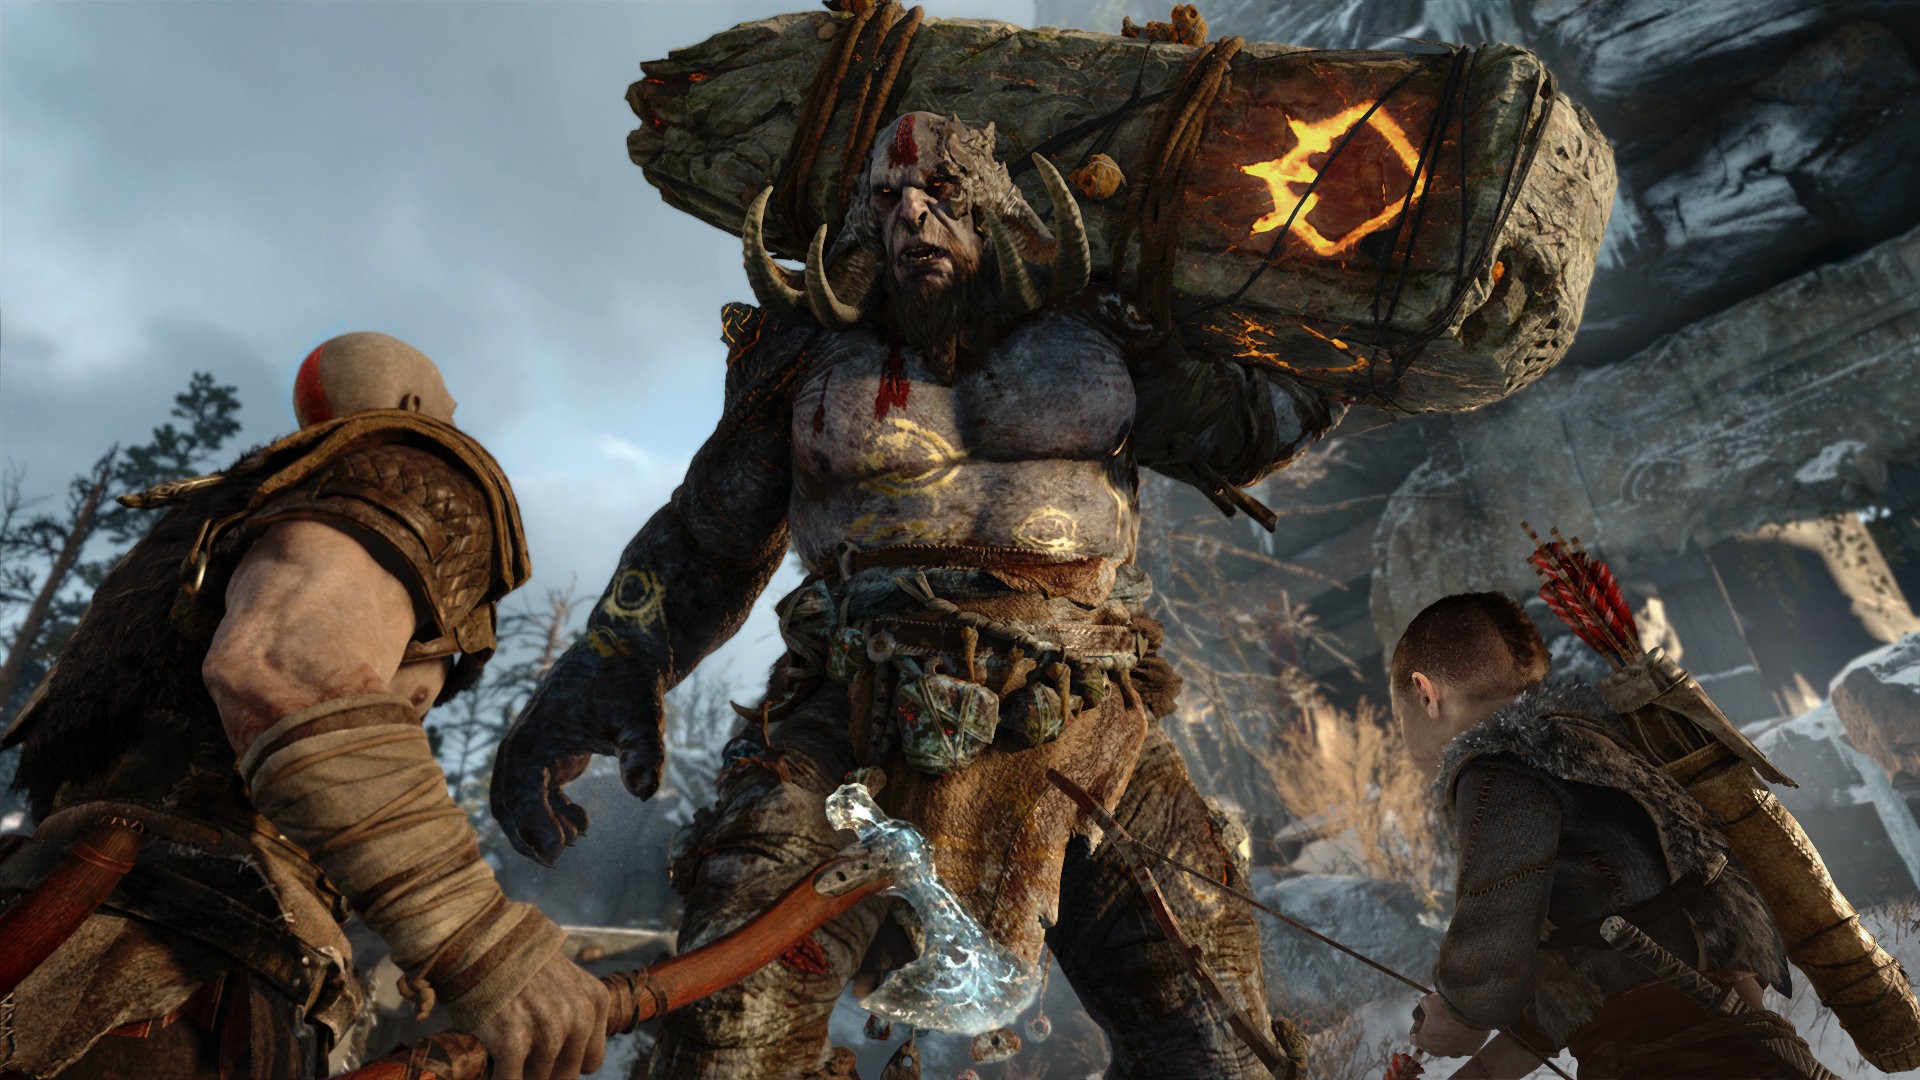 God of War Ragnarök ganha trailer de lançamento cheio de ação com